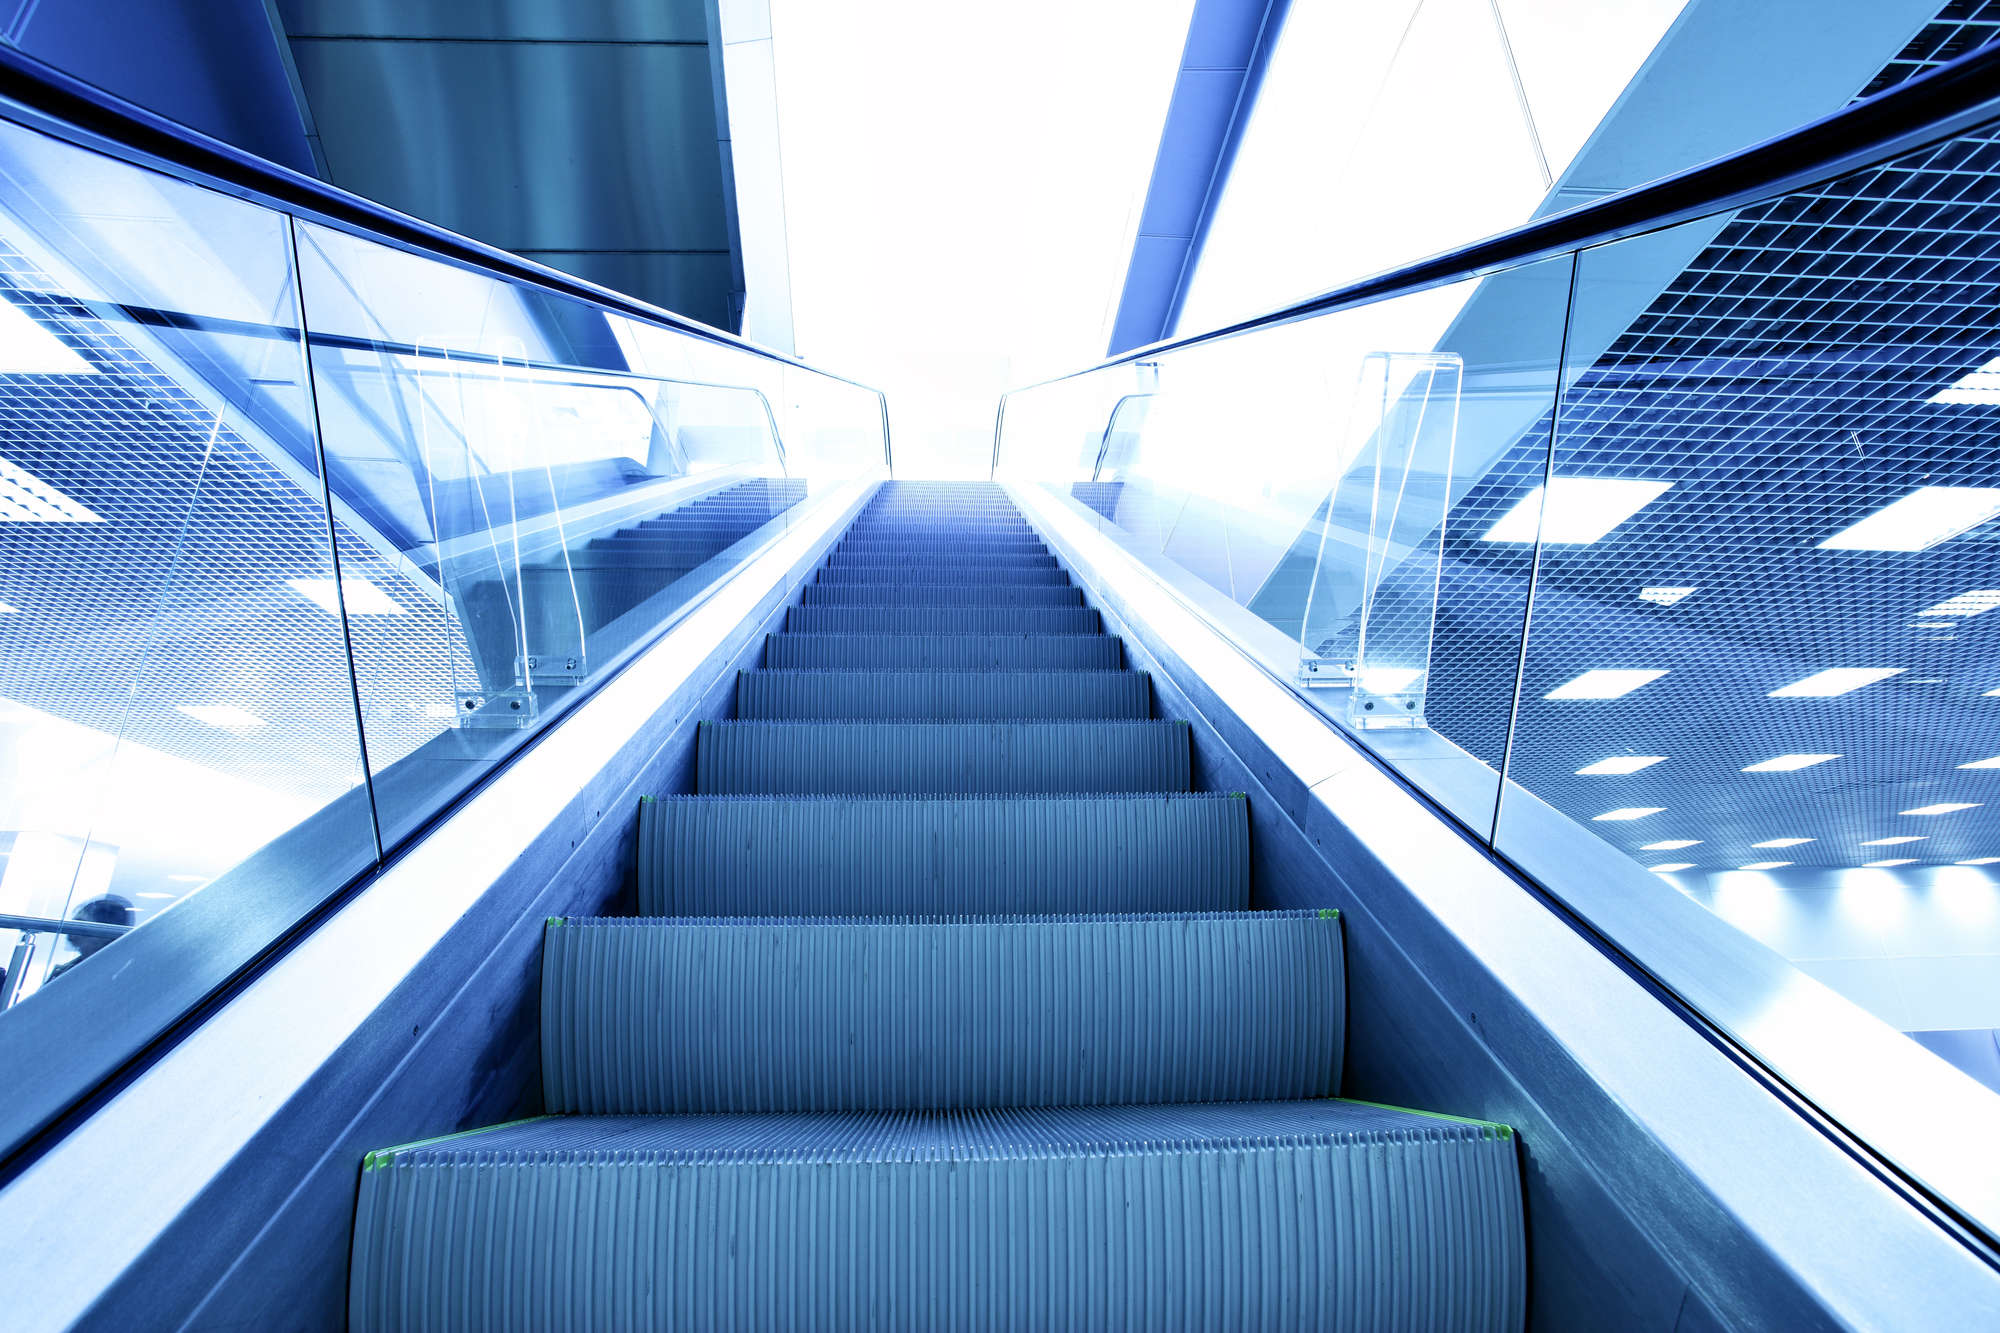 Perspektive der Rolltreppe in blauer Farbe getönt